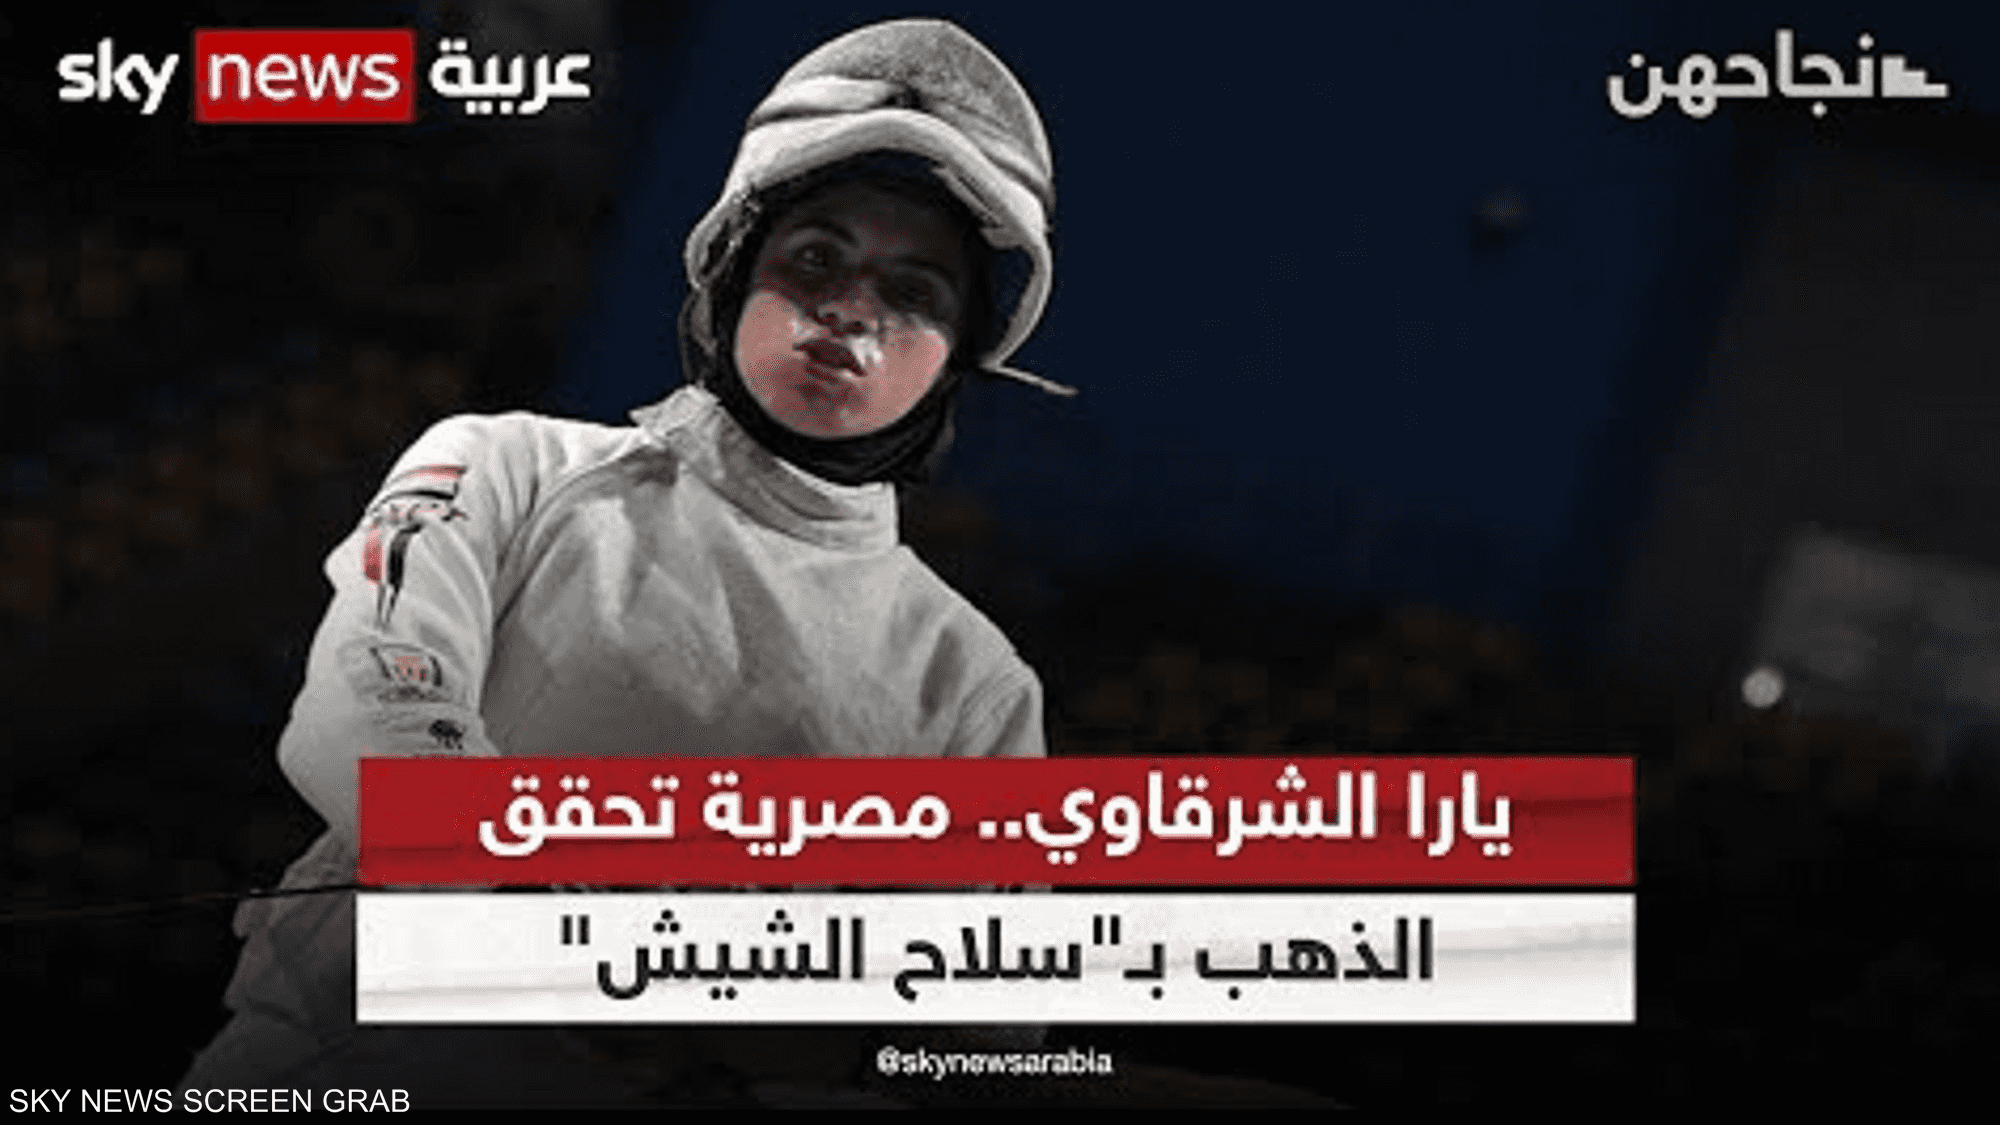 يارا الشرقاوي.. مصرية تحقق الذهب بـ"سلاح الشيش"